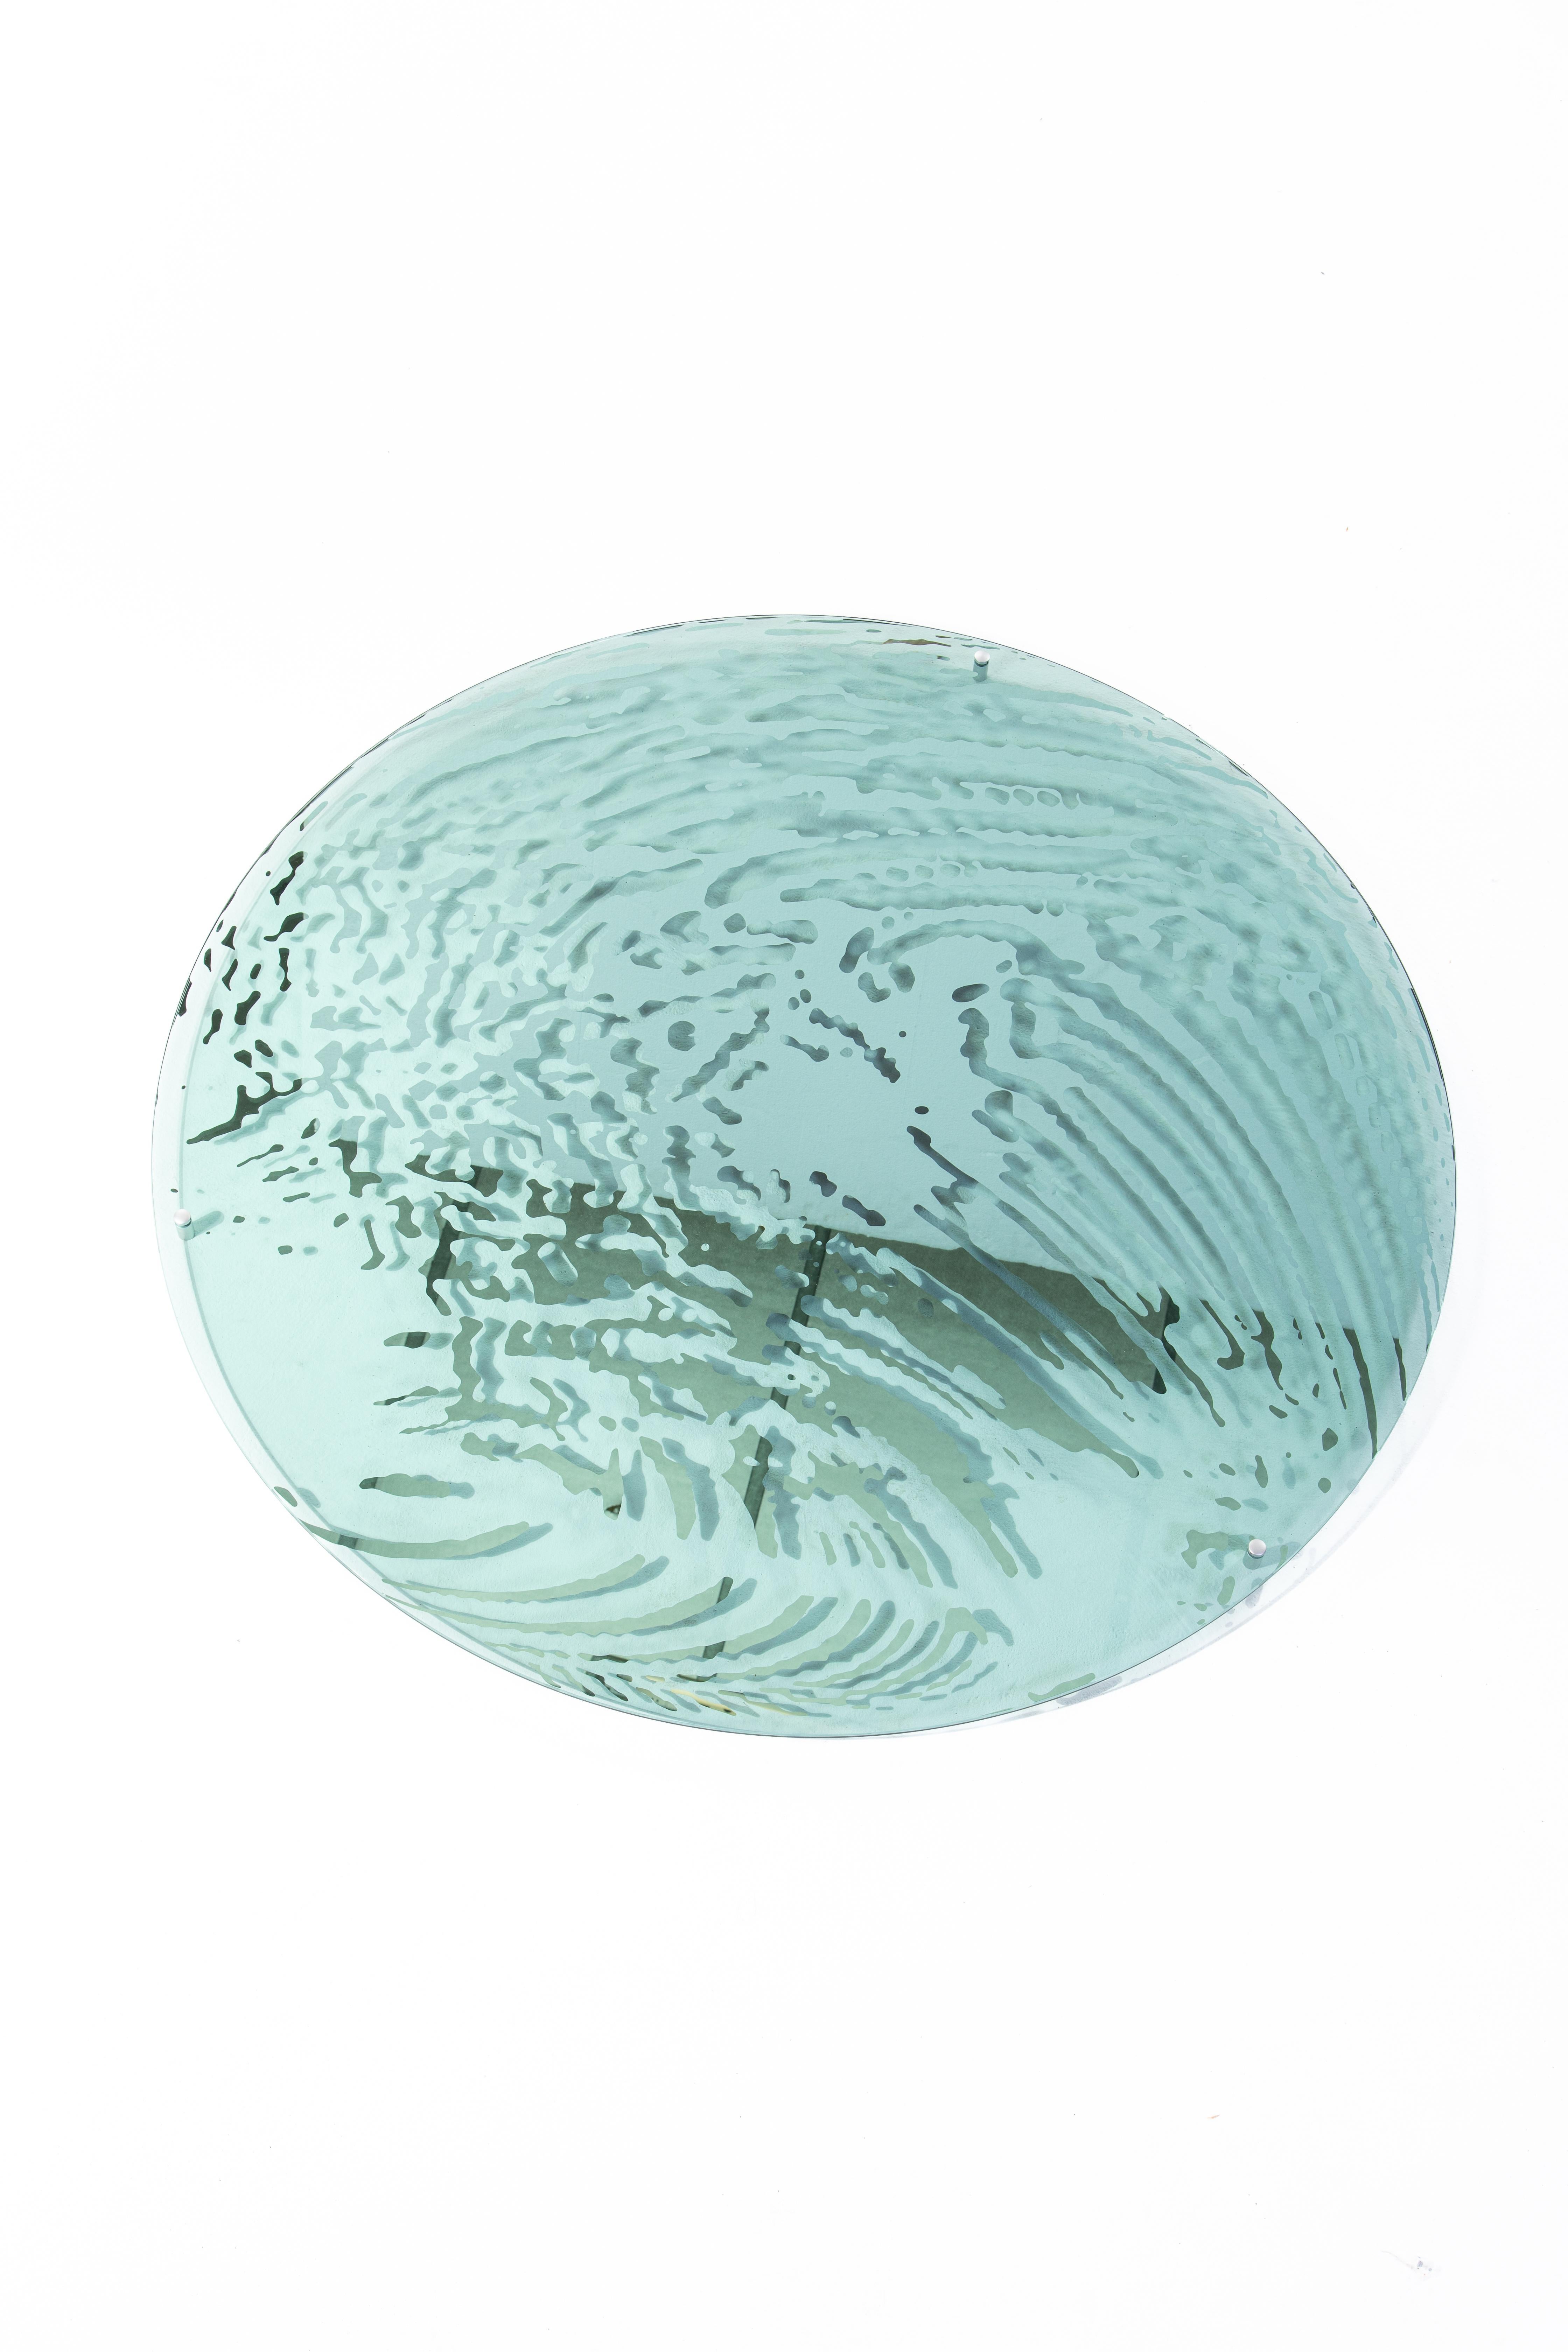 Miroir Bigger Splash, verre coloré et plaqué argent de 13 Desserts
Conçu par Clément ROUGELOT. 

Ces miroirs, dont les motifs aquatiques sont argentés à la main sur du verre teinté, sont le fruit d'une collaboration entre Clément et la graphiste